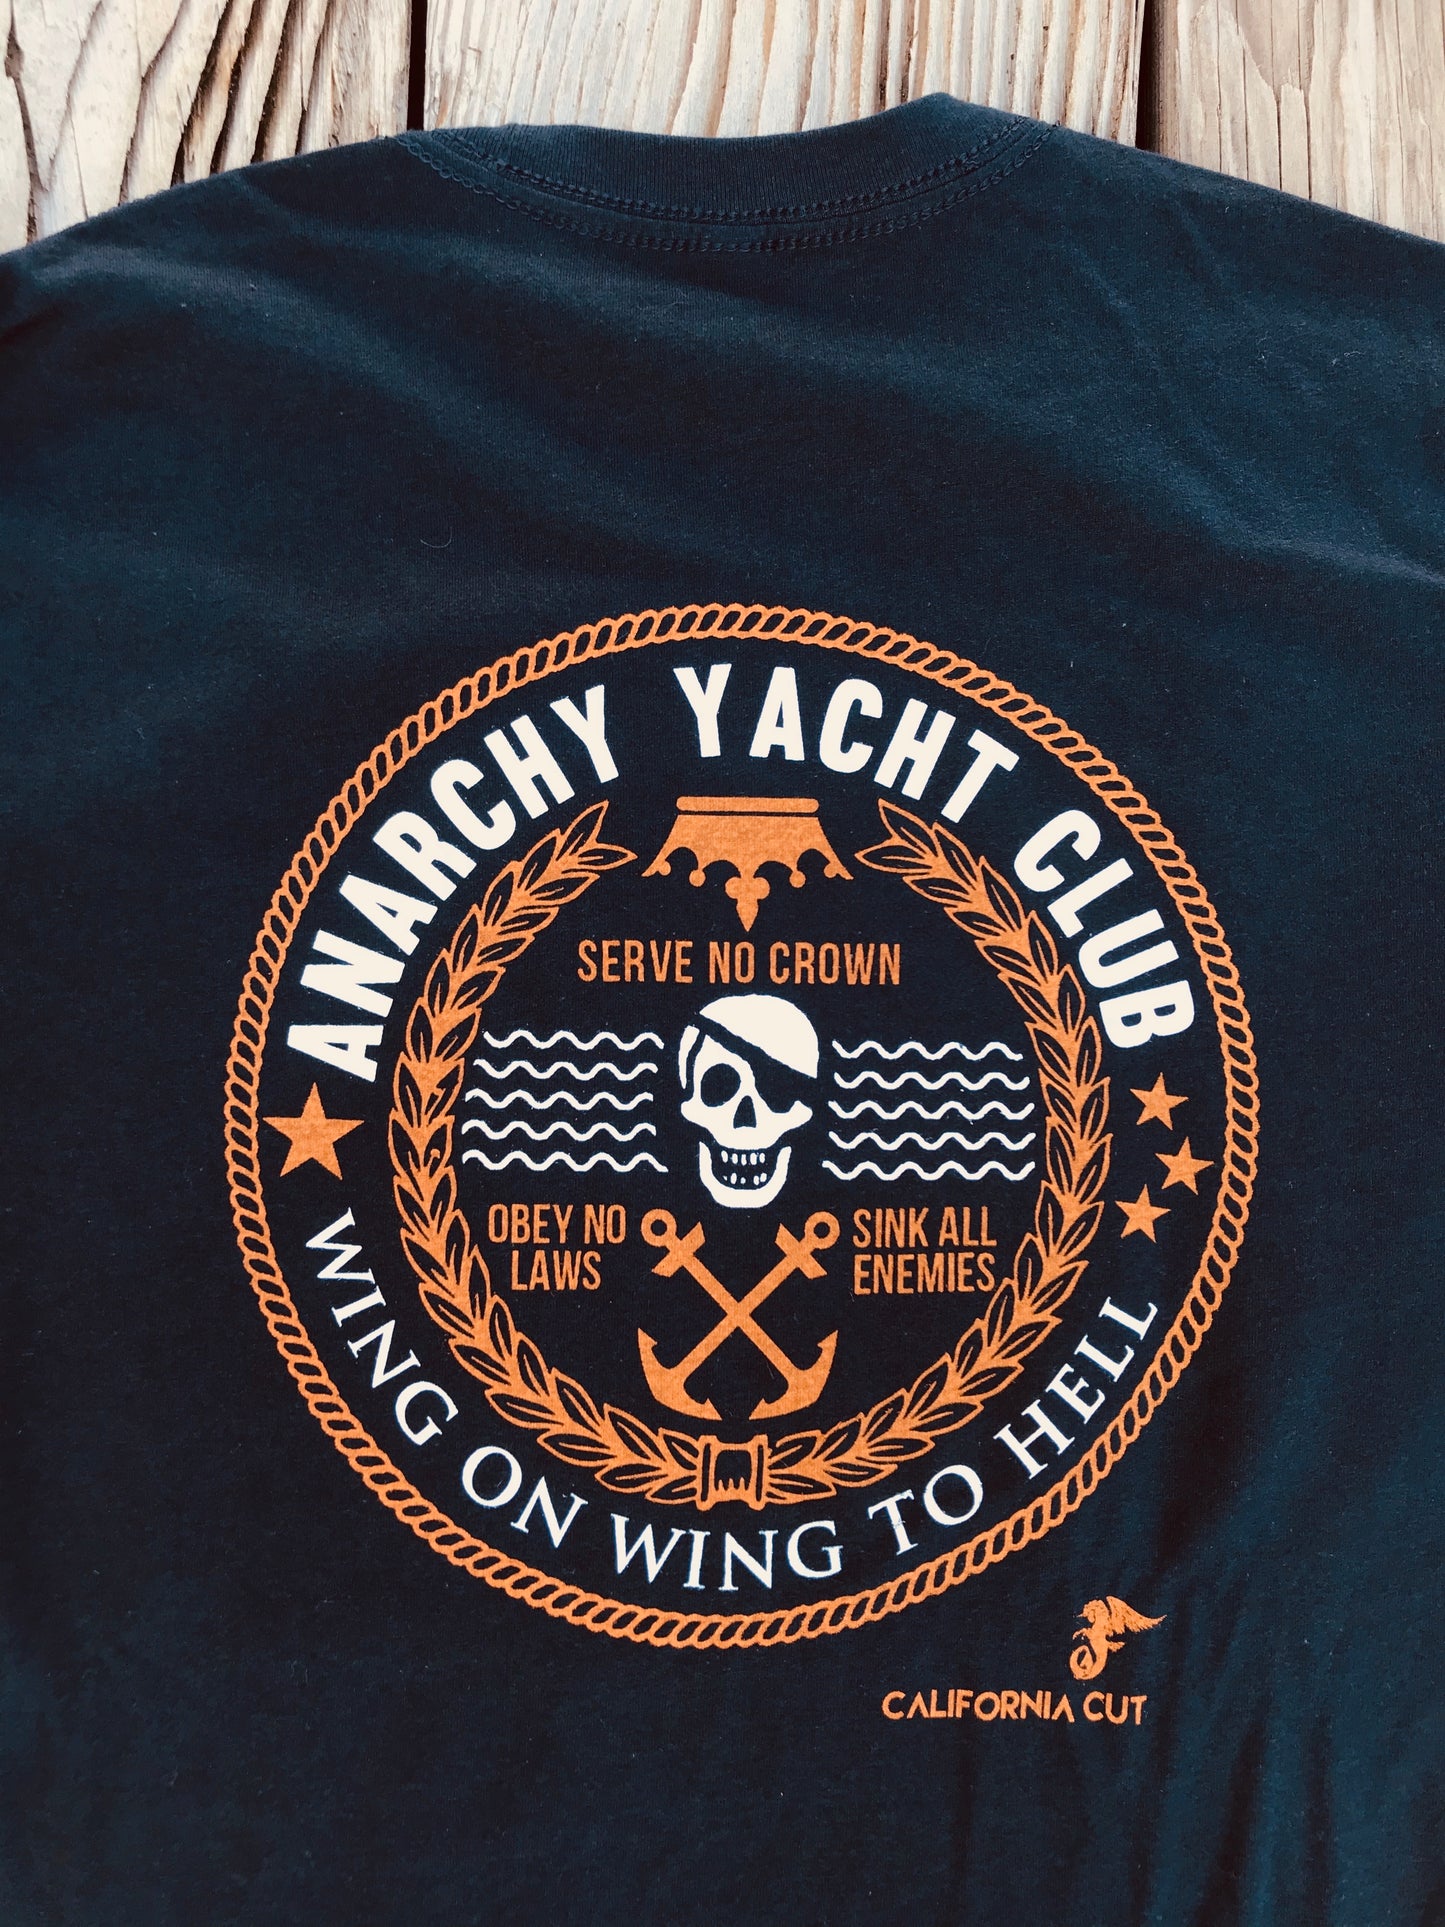 Anarchy Yacht Club T-shirt